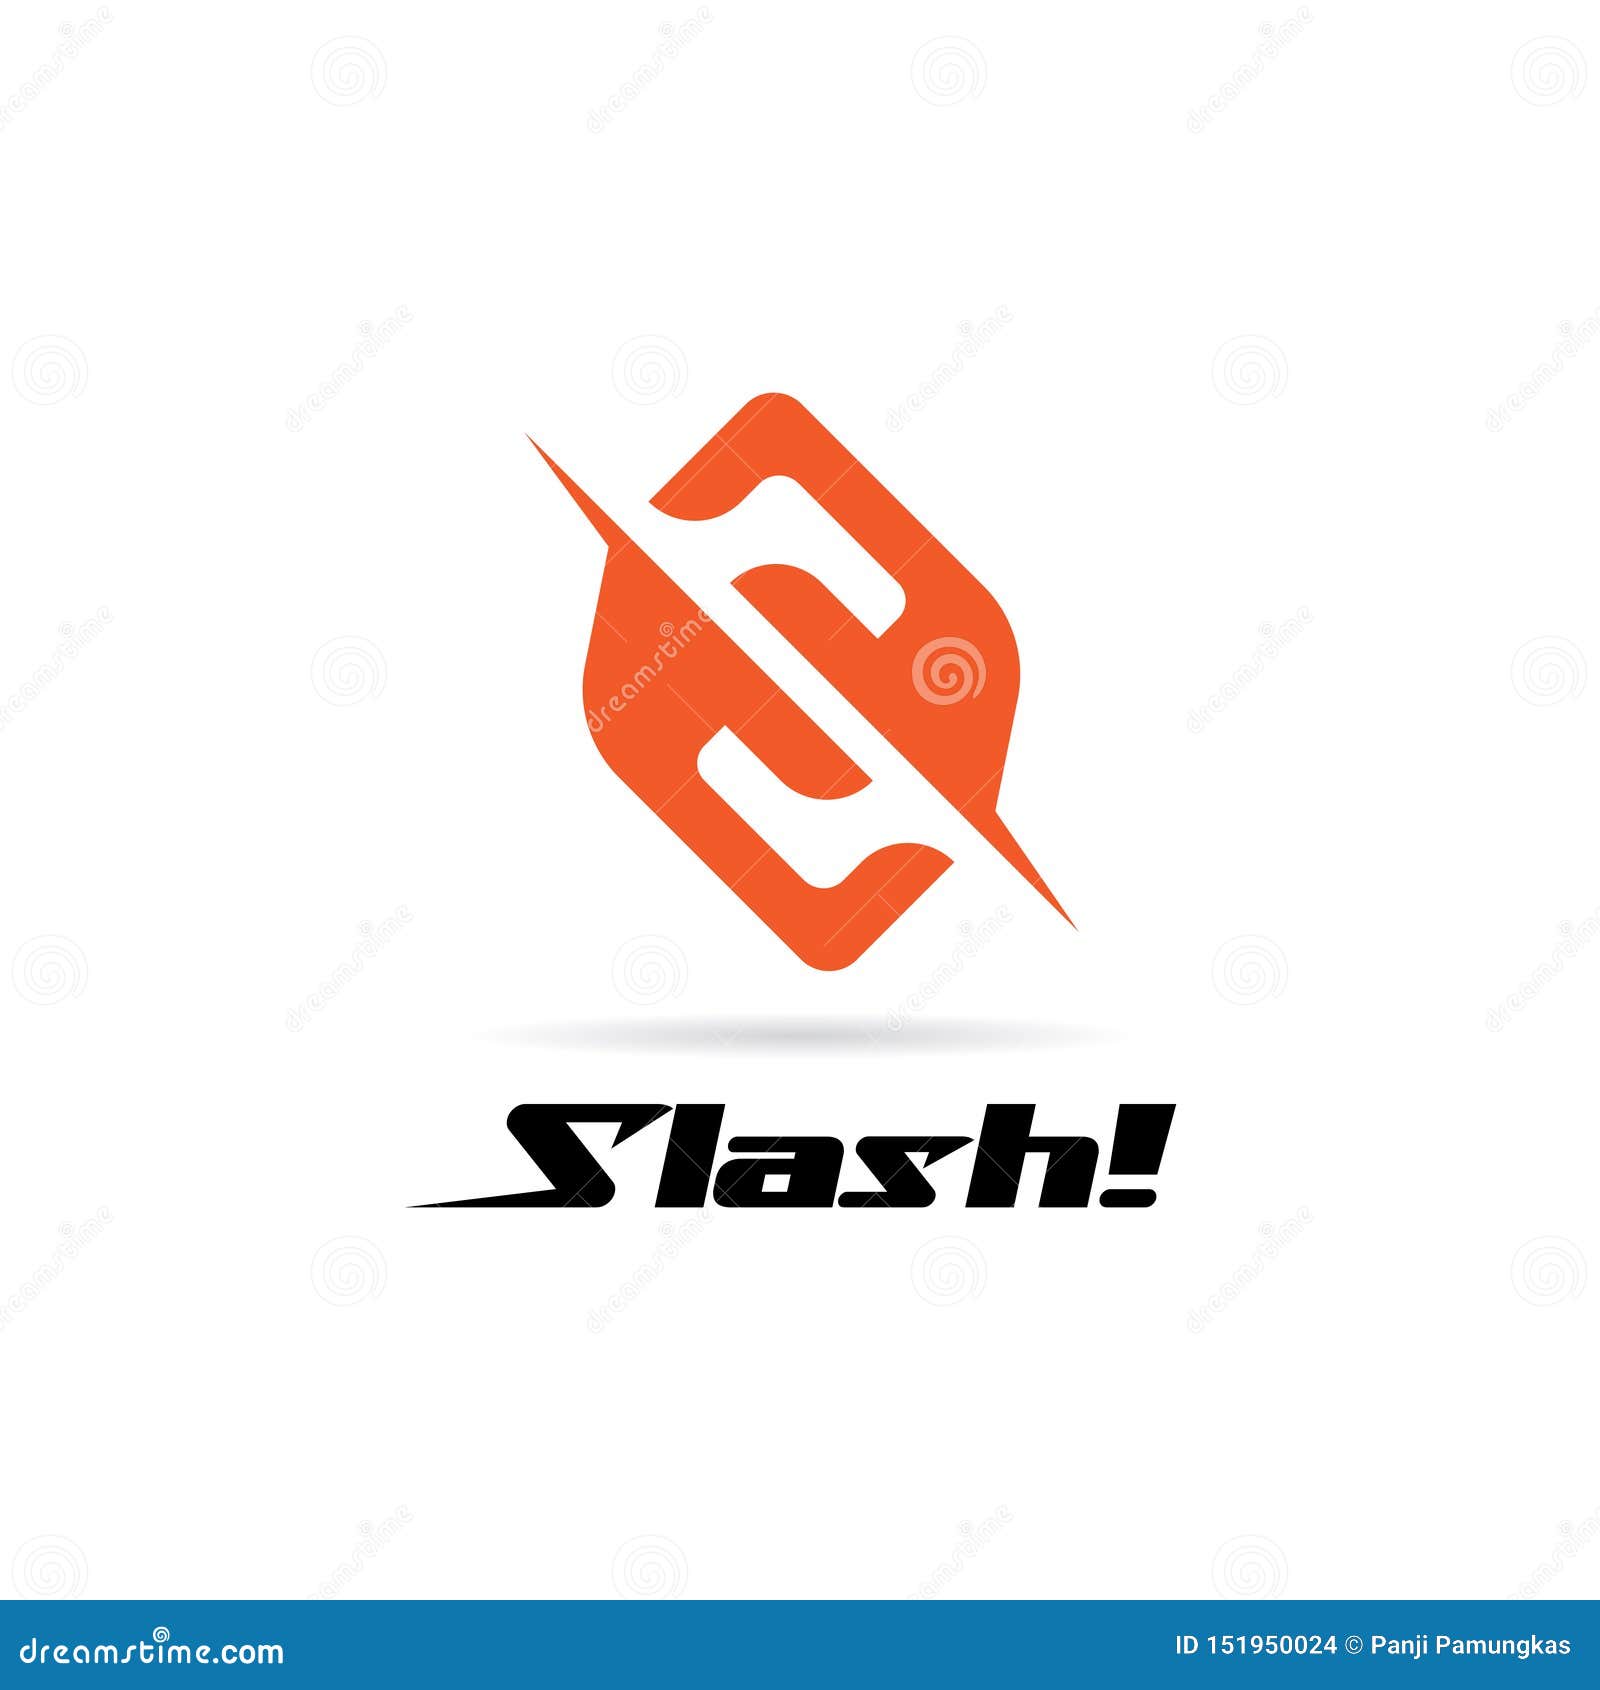 Slash - Free shapes and symbols icons